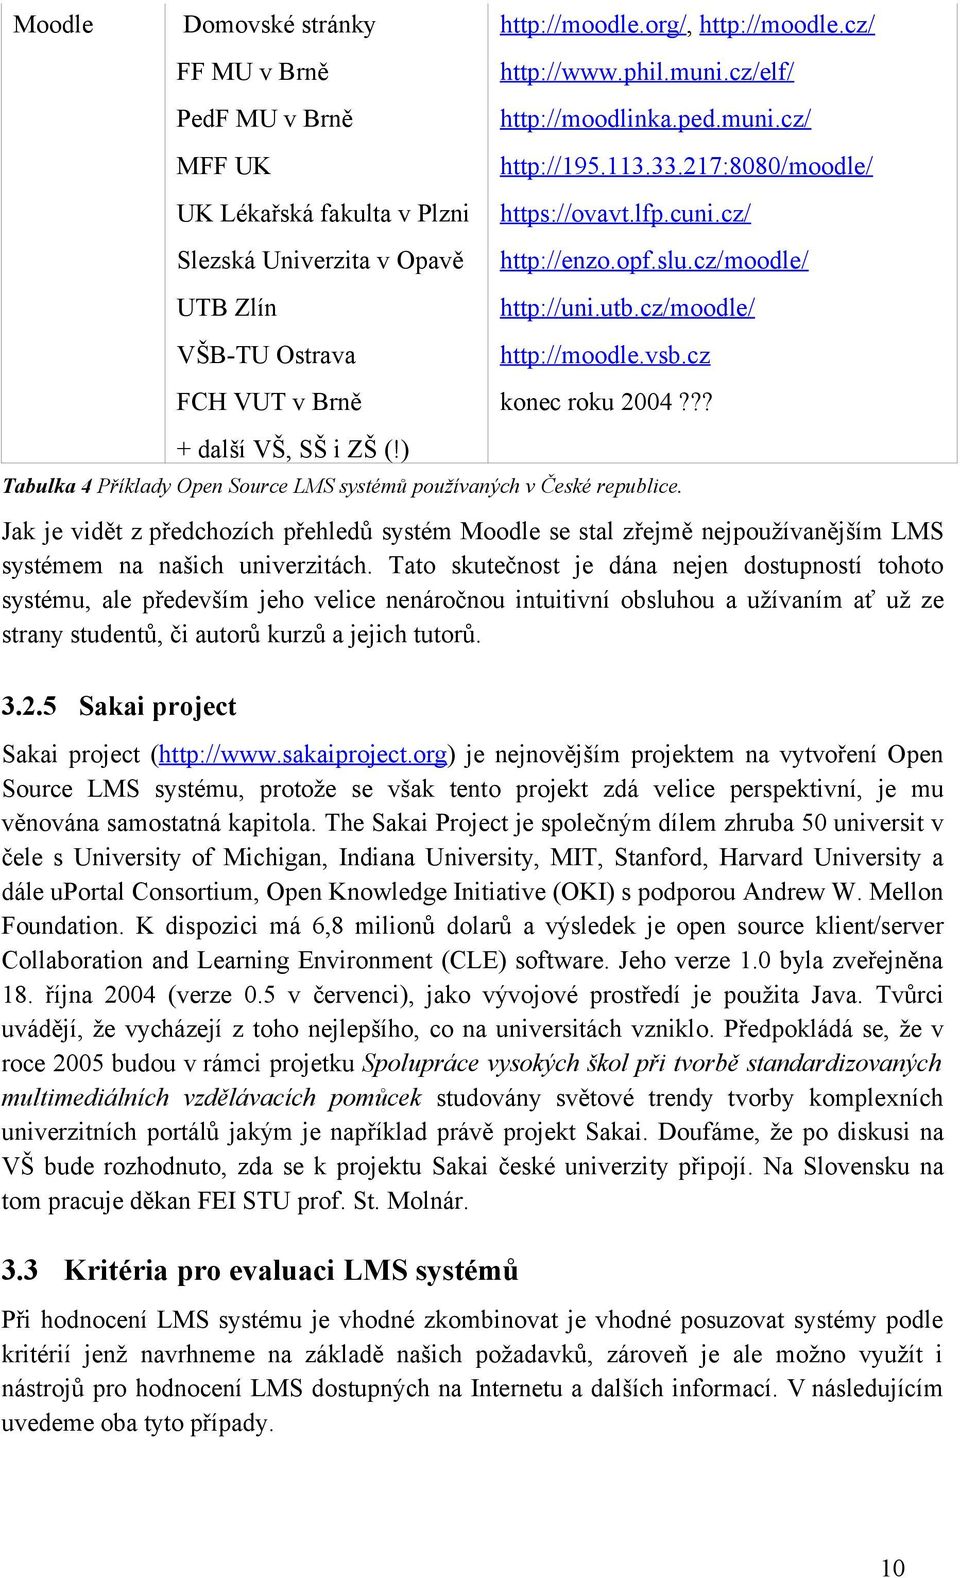 cz/moodle/ http://moodle.vsb.cz konec roku 2004??? Tabulka 4 Příklady Open Source LMS systémů používaných v České republice.